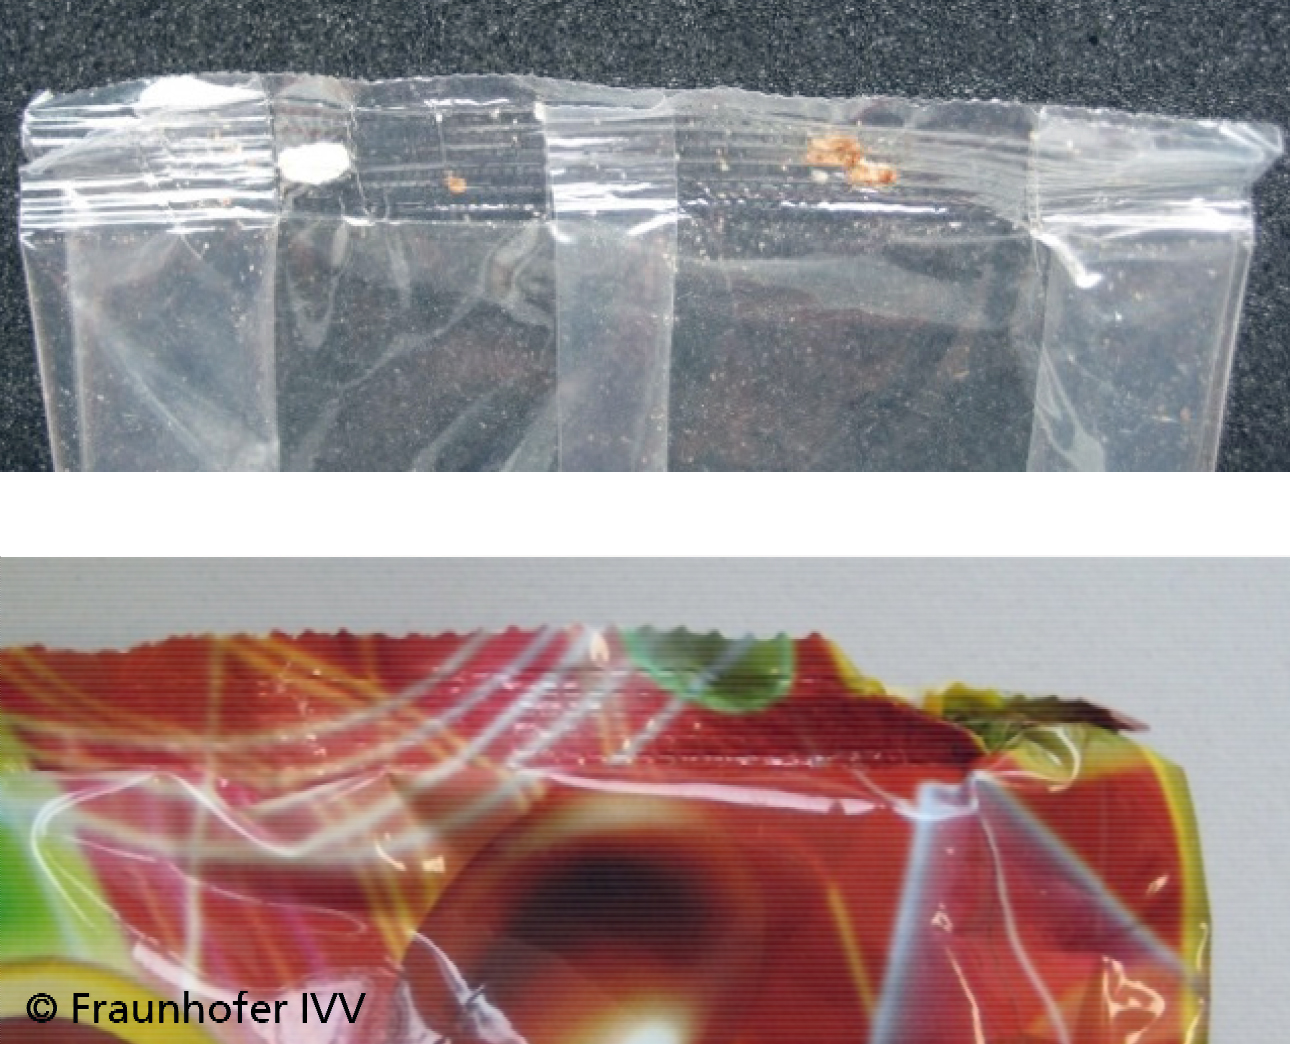 Beispiele undichter oder optisch mangelhafter Folienverpackungen: Kontaminationen durch Füllgut in der Siegelnaht (oben) und Falten in der Fügenaht (unten).